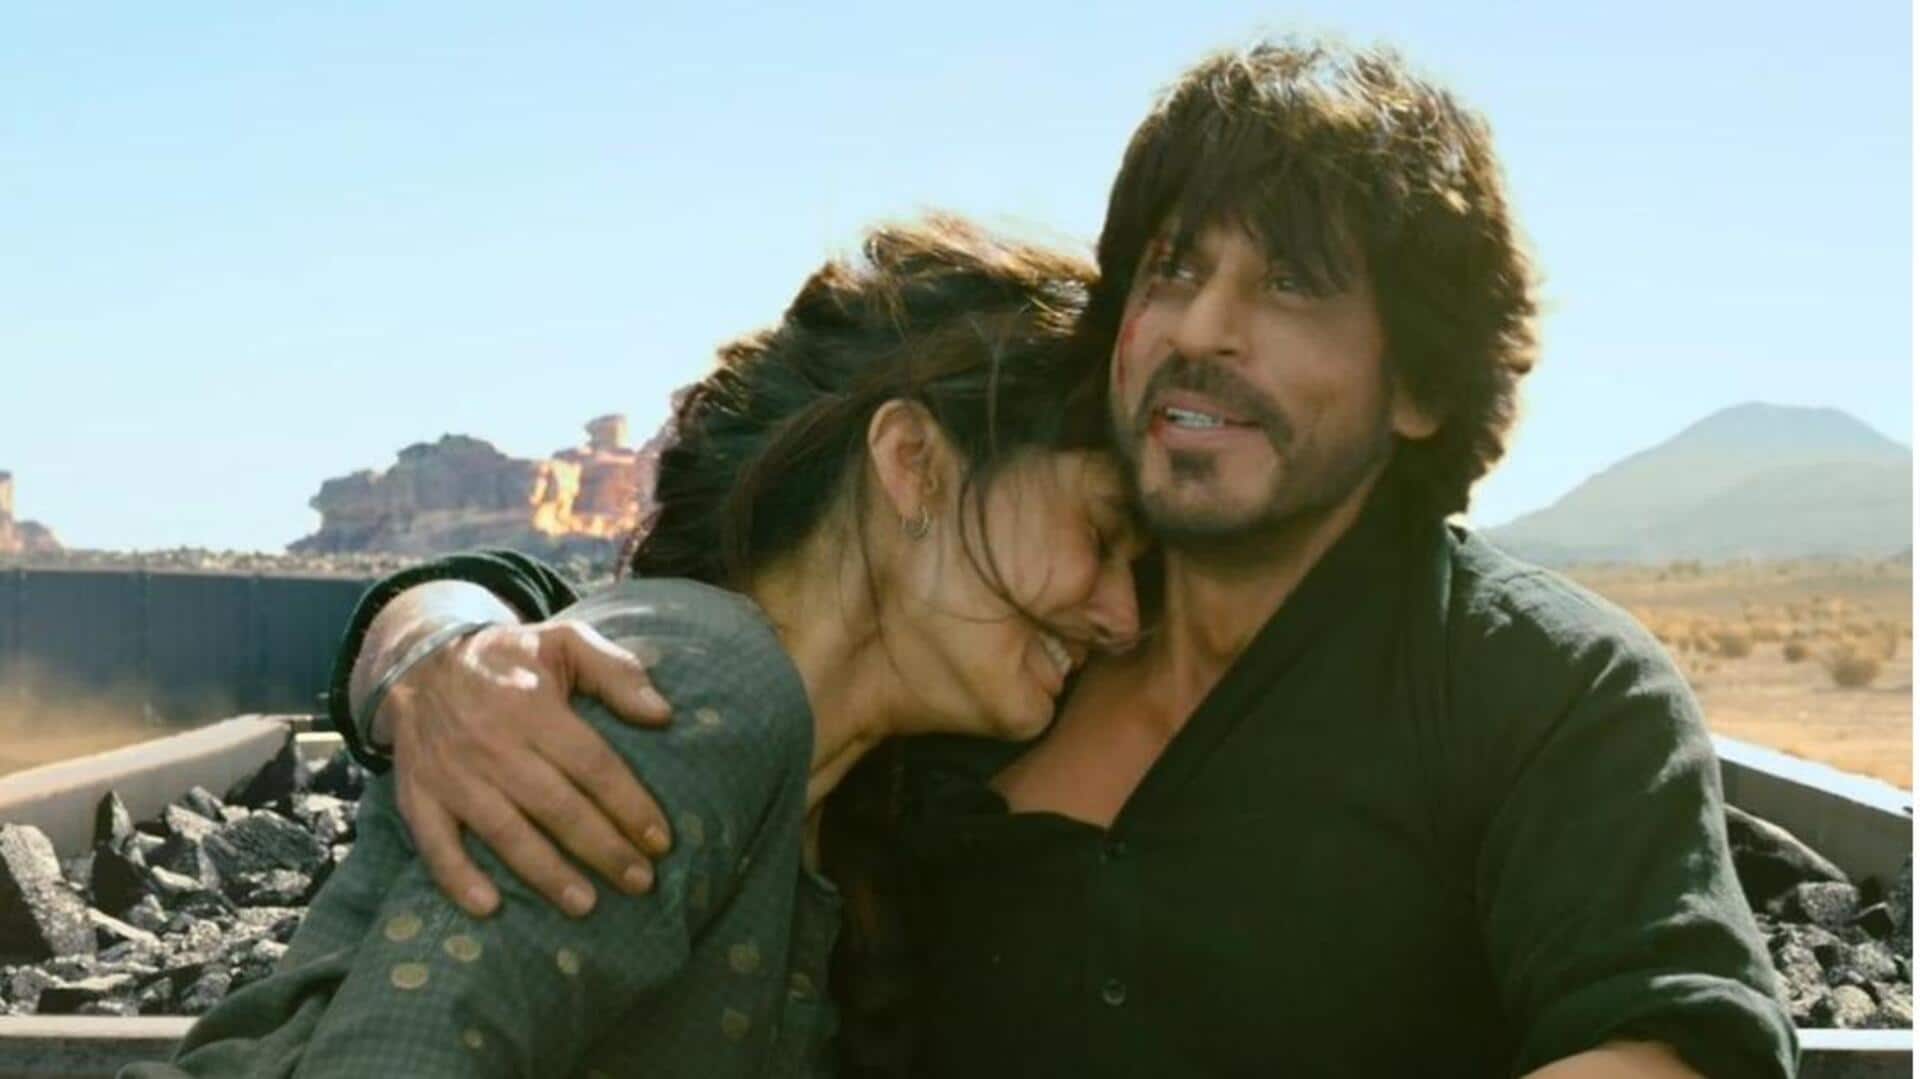 शाहरुख खान की 'डंकी' होगी गेयटी सिनेमाघर में इस समय दिखाई जाने वाली पहली बॉलीवुड फिल्म